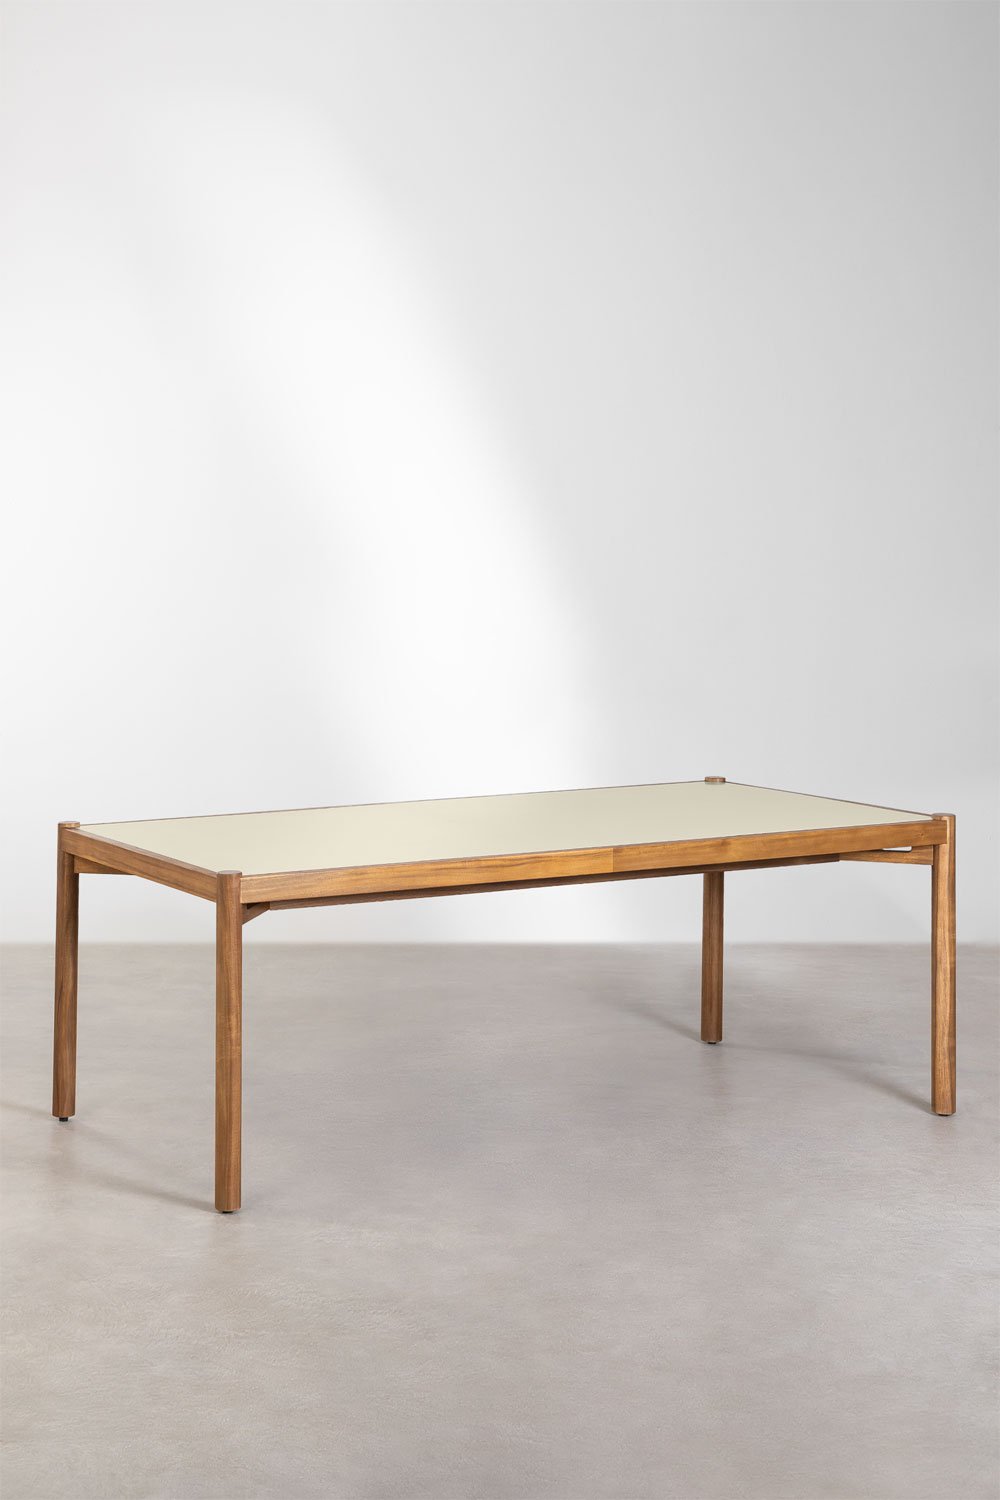 Gamila rechthoekige tafelset (210x100 cm) en 6 eetkamerstoelen in hout en cement Uish Edition, galerij beeld 2